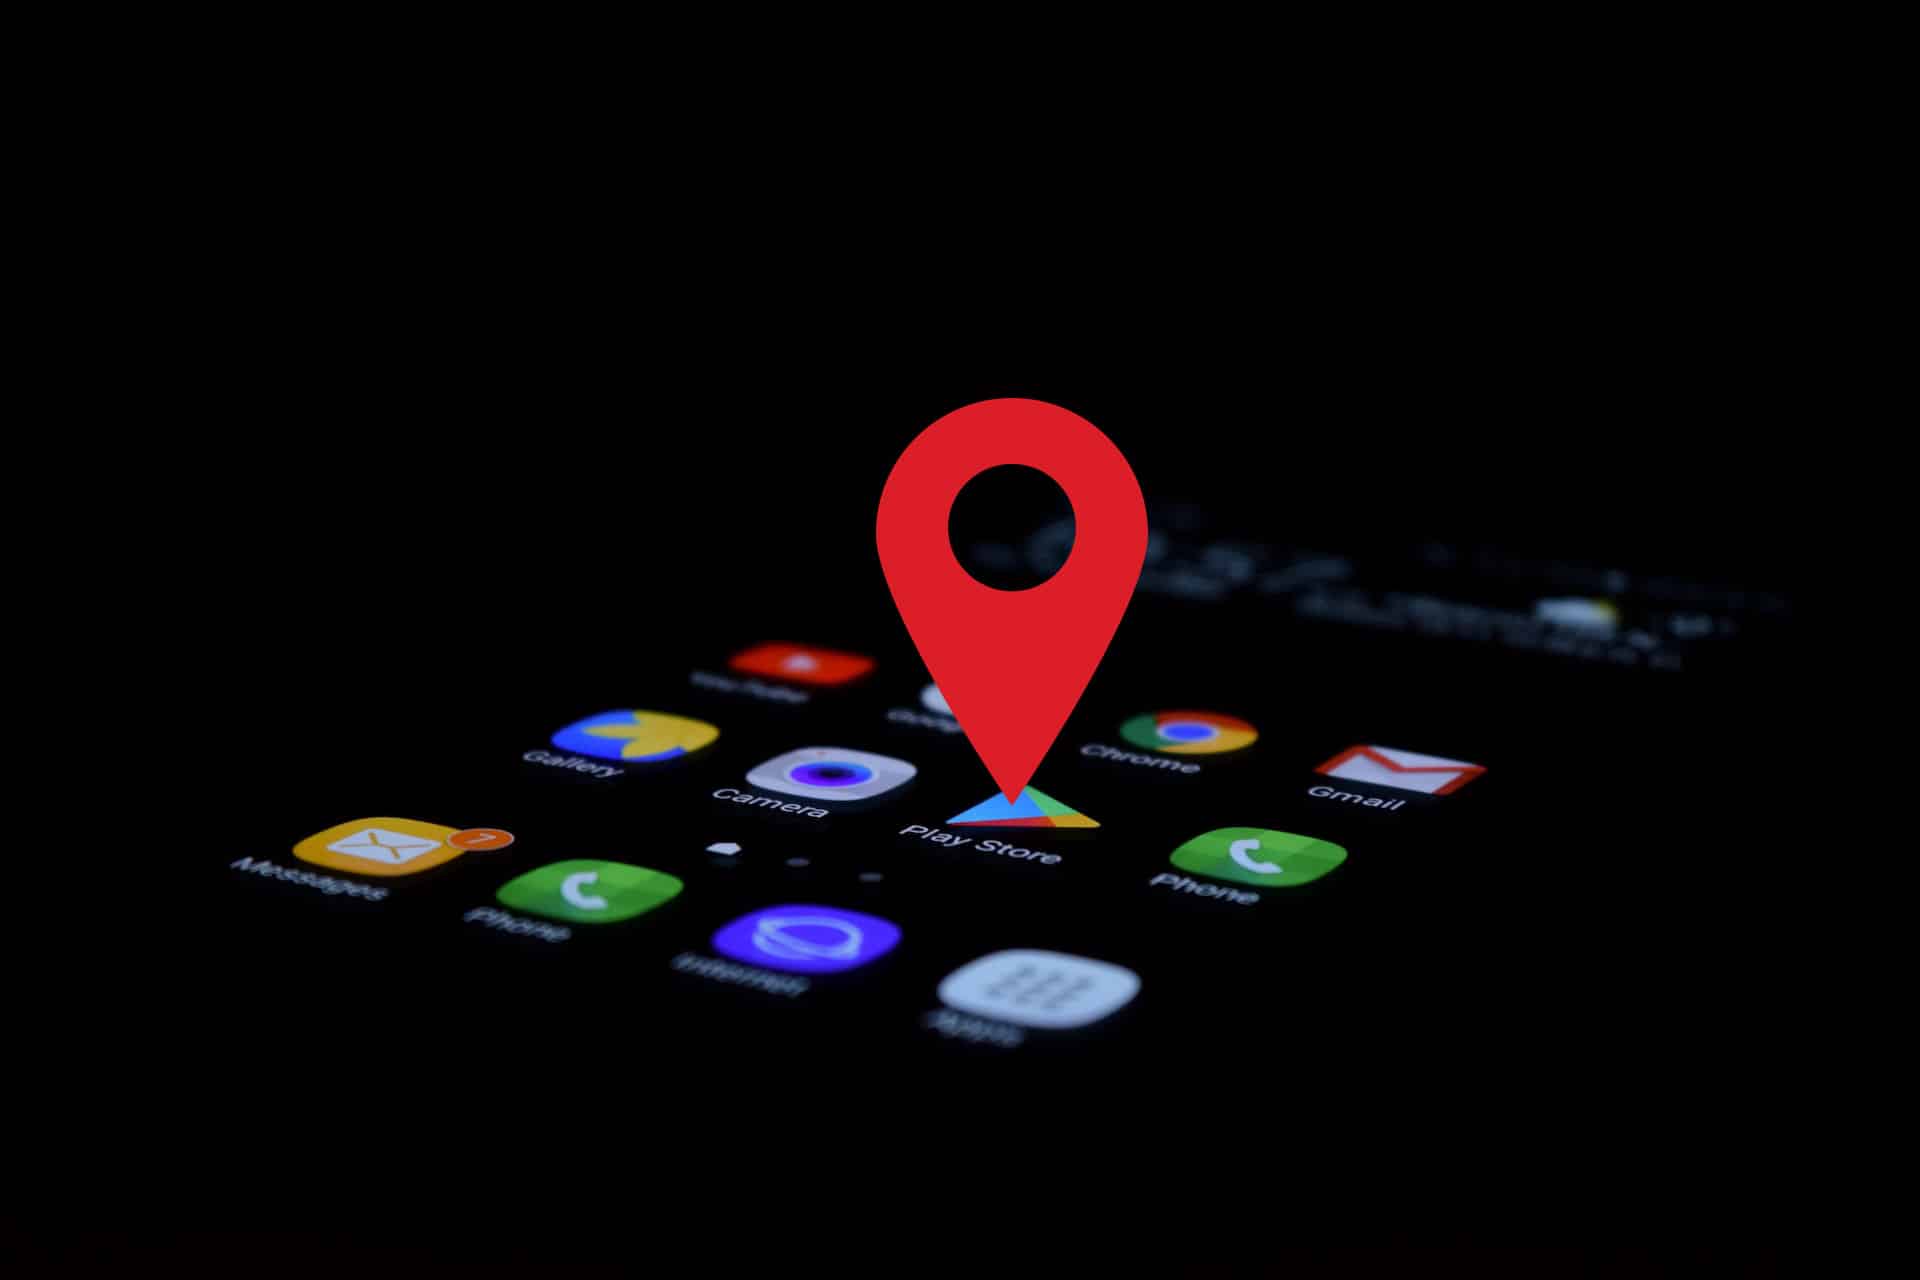 teléfono móvil en la oscuridad con la pantalla encendida y uel símobolo de ubicacón encima de la aplicación Google Play